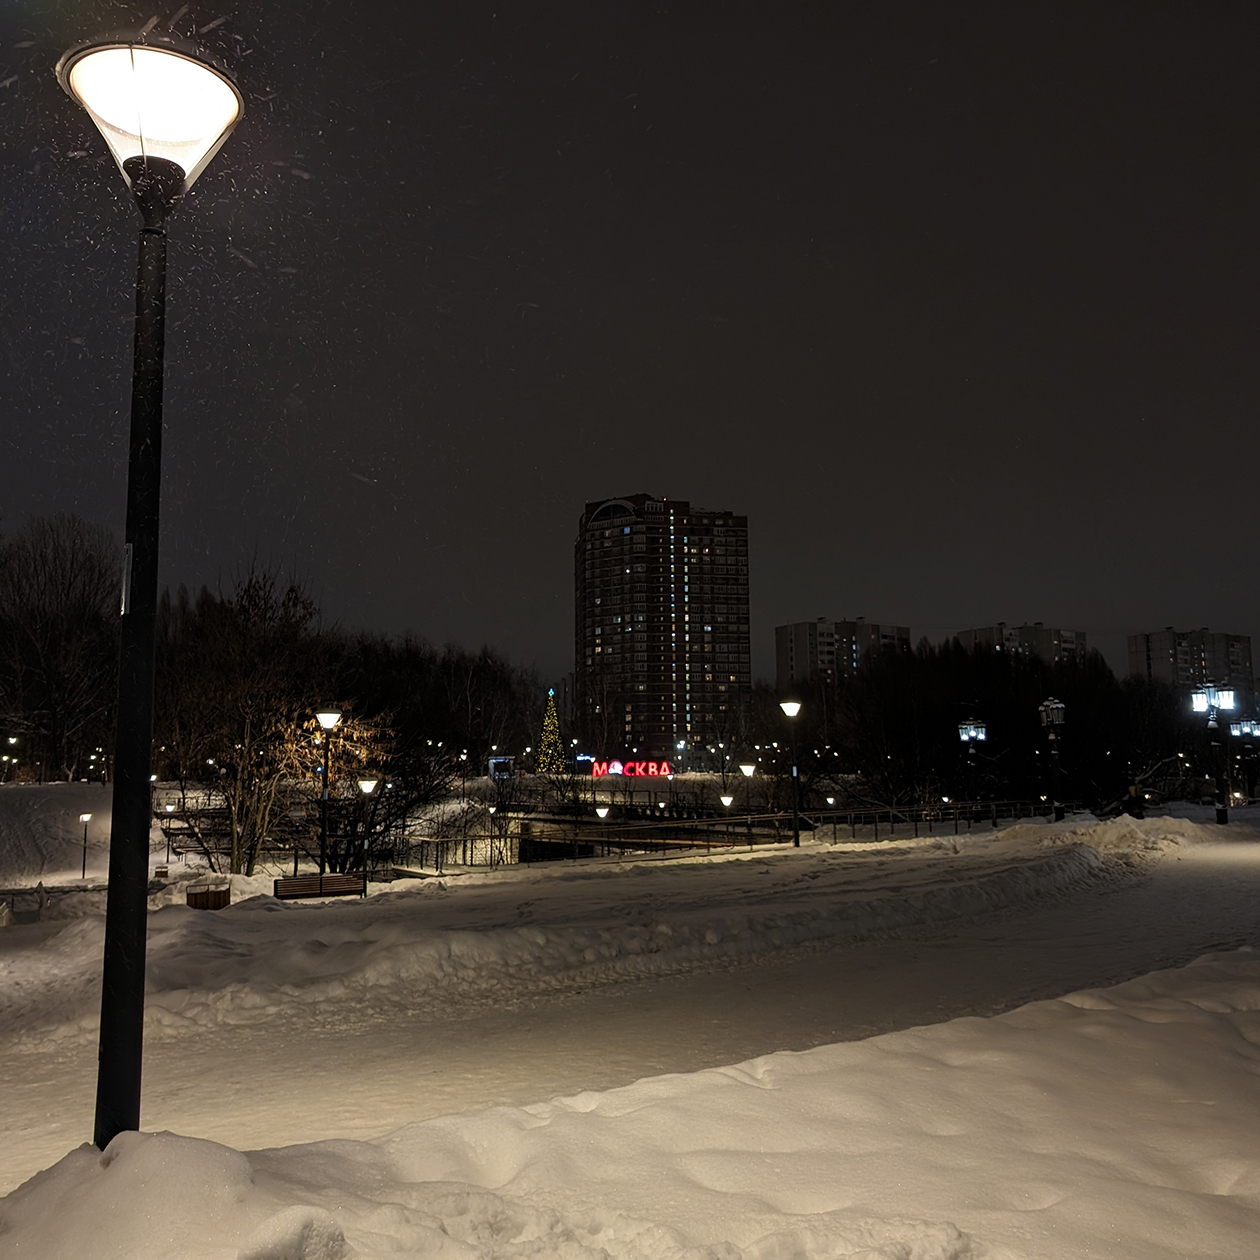 Ночью та же сцена выглядит совсем иначе: фонари немного засвечены, а четкость домов вдали ощутимо упала, но вот снег в свете фонаря смотрится даже более фактурным и проработанным, чем днем